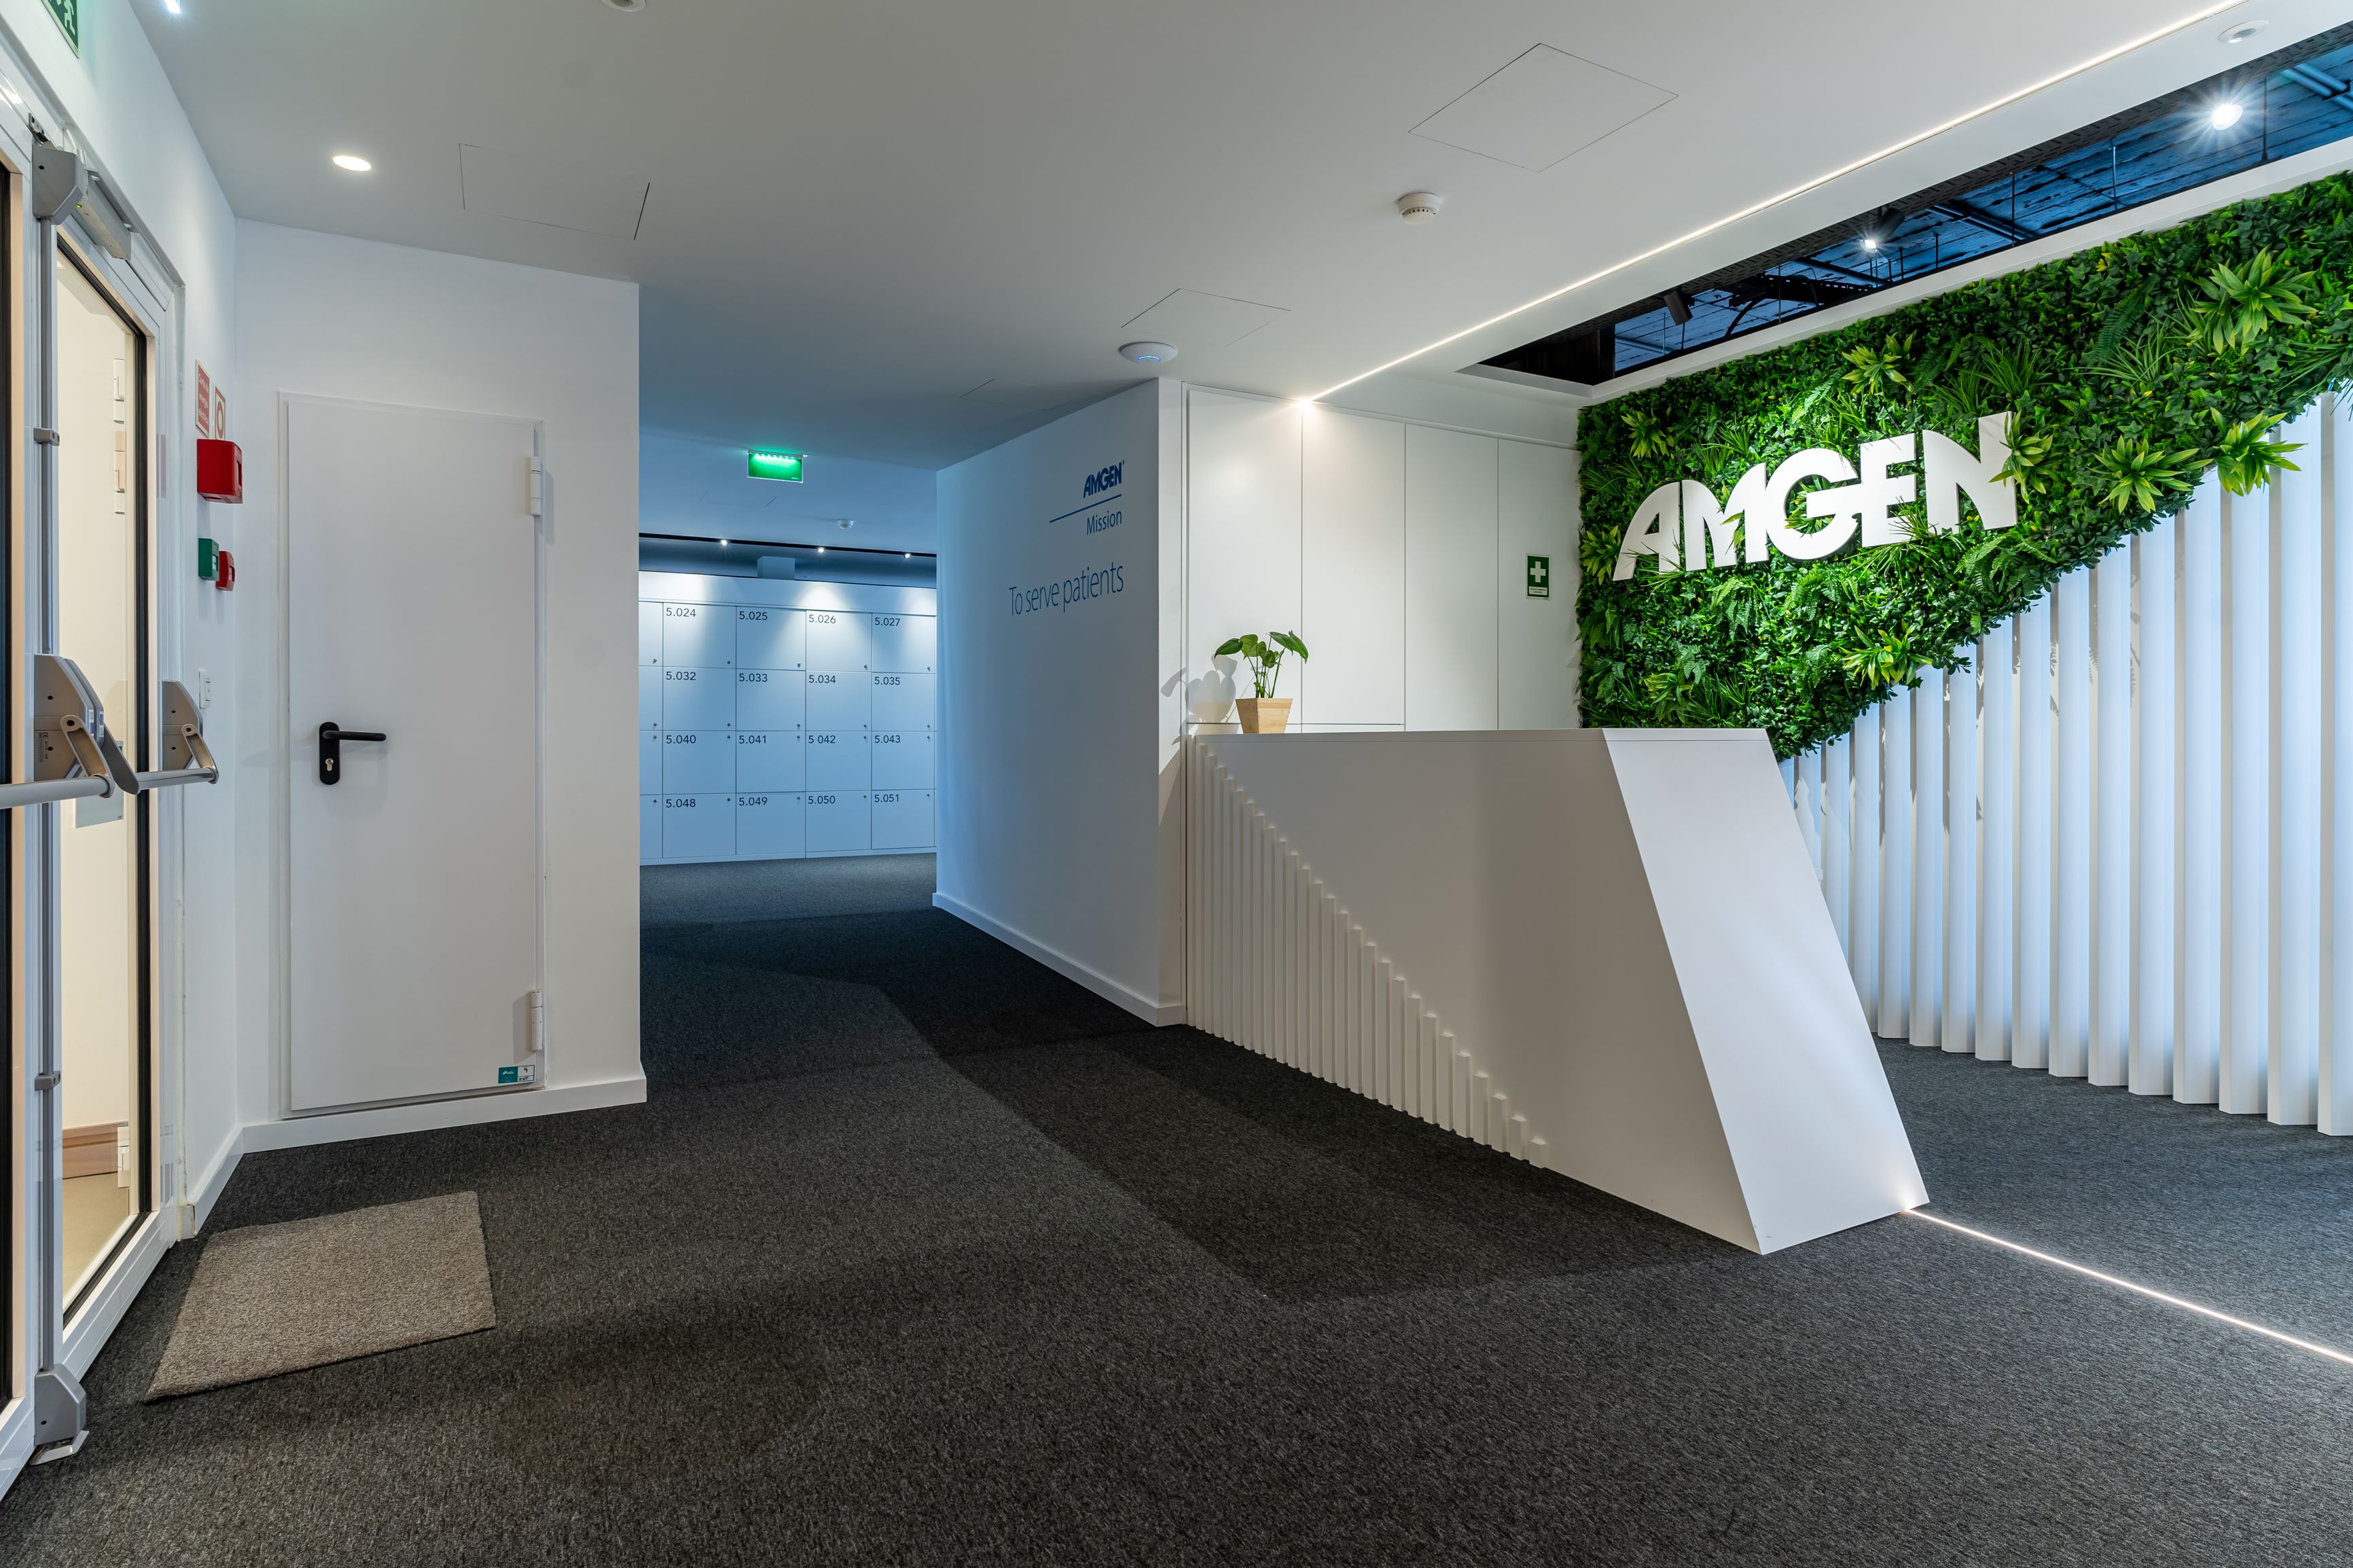 Escritório AMGEN inaugurado em 2022